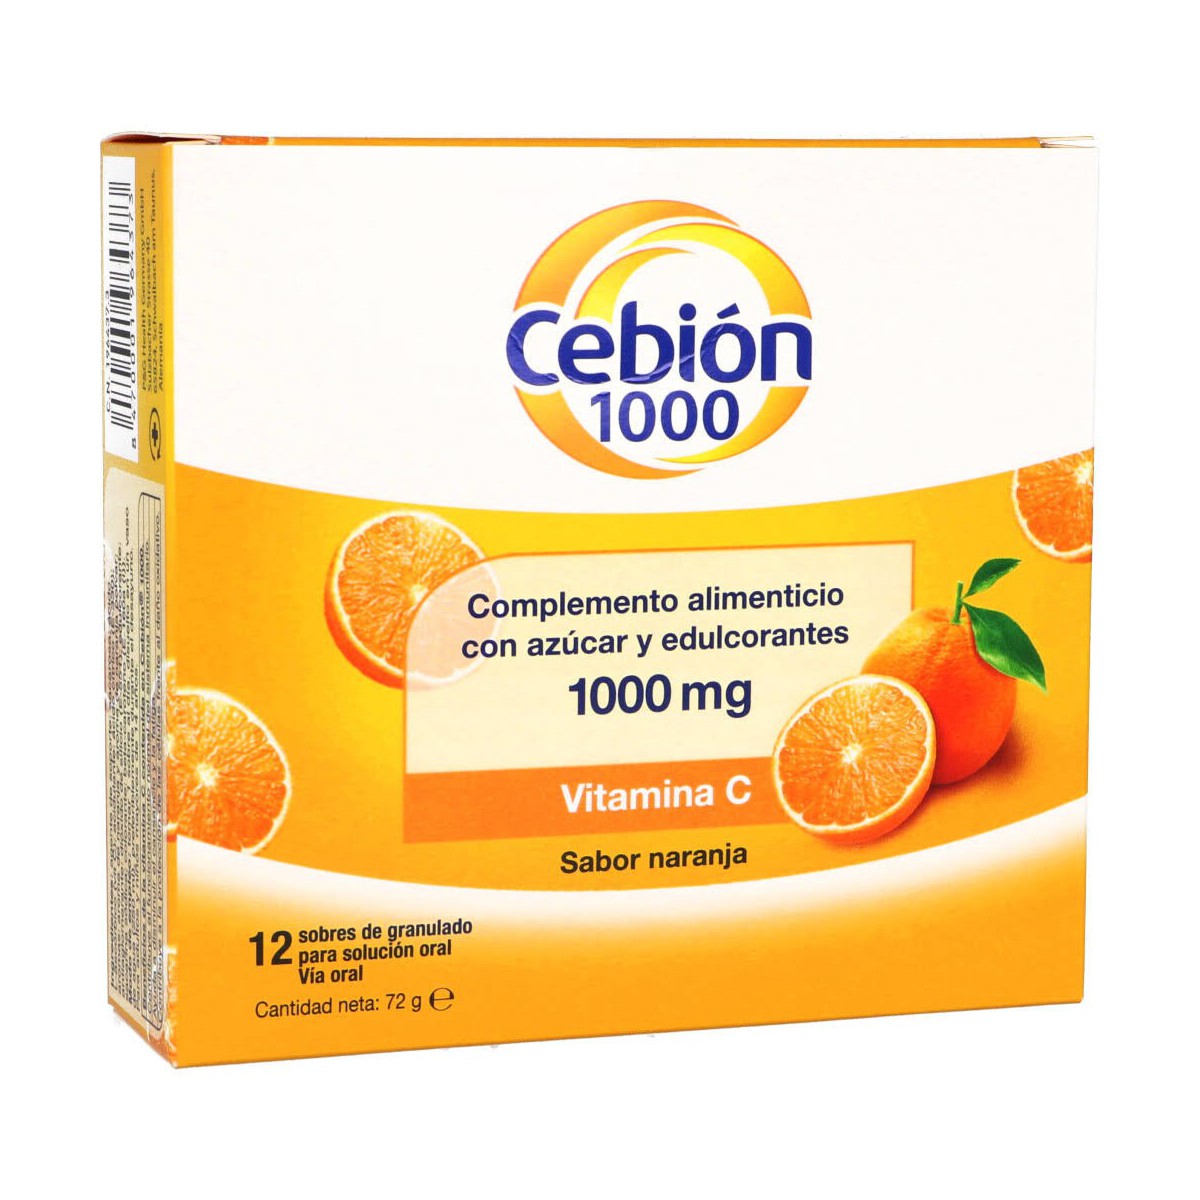 Cebion 1000 mg 12 sobres